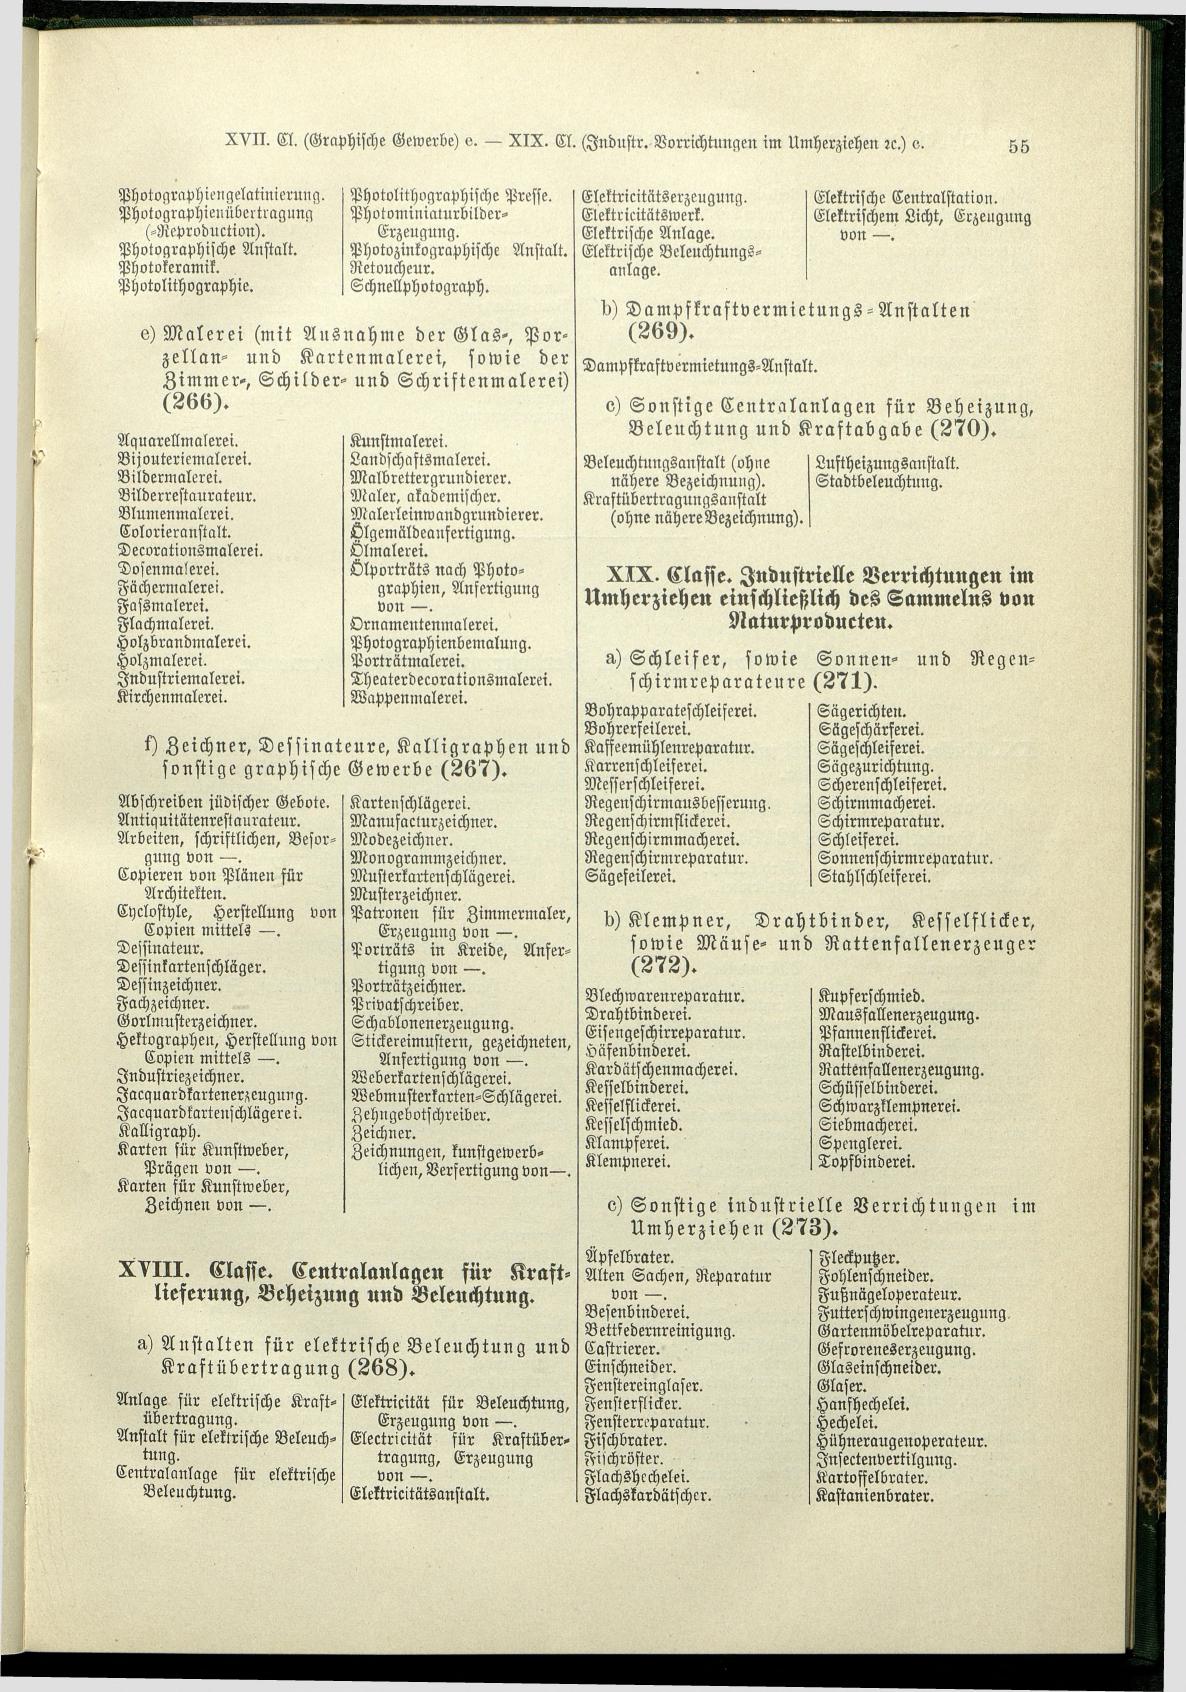 Verzeichnis der Gewerbe der im Reichsrathe vertretenen Königreiche und Länder 1900 - Seite 59